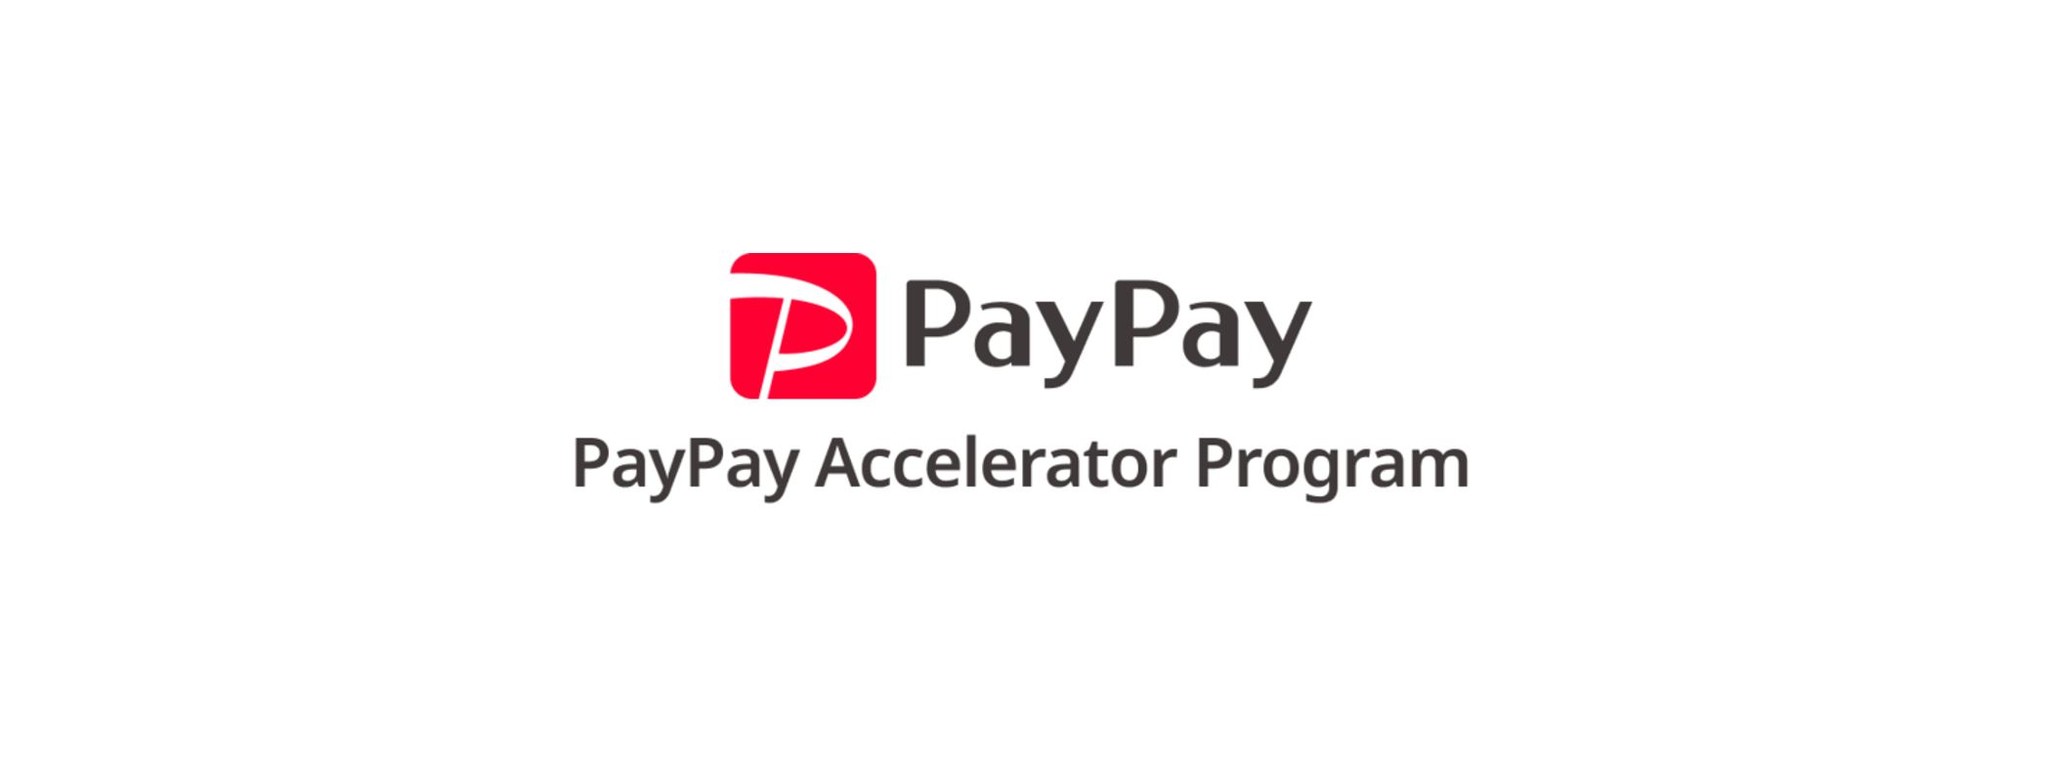 今後、PayPayのミニアプリ化を目指す4社を採択！ミニアプリを開発するスタートアップの成長支援プログラム「PayPay Accelerator Program」のデモデーを開催